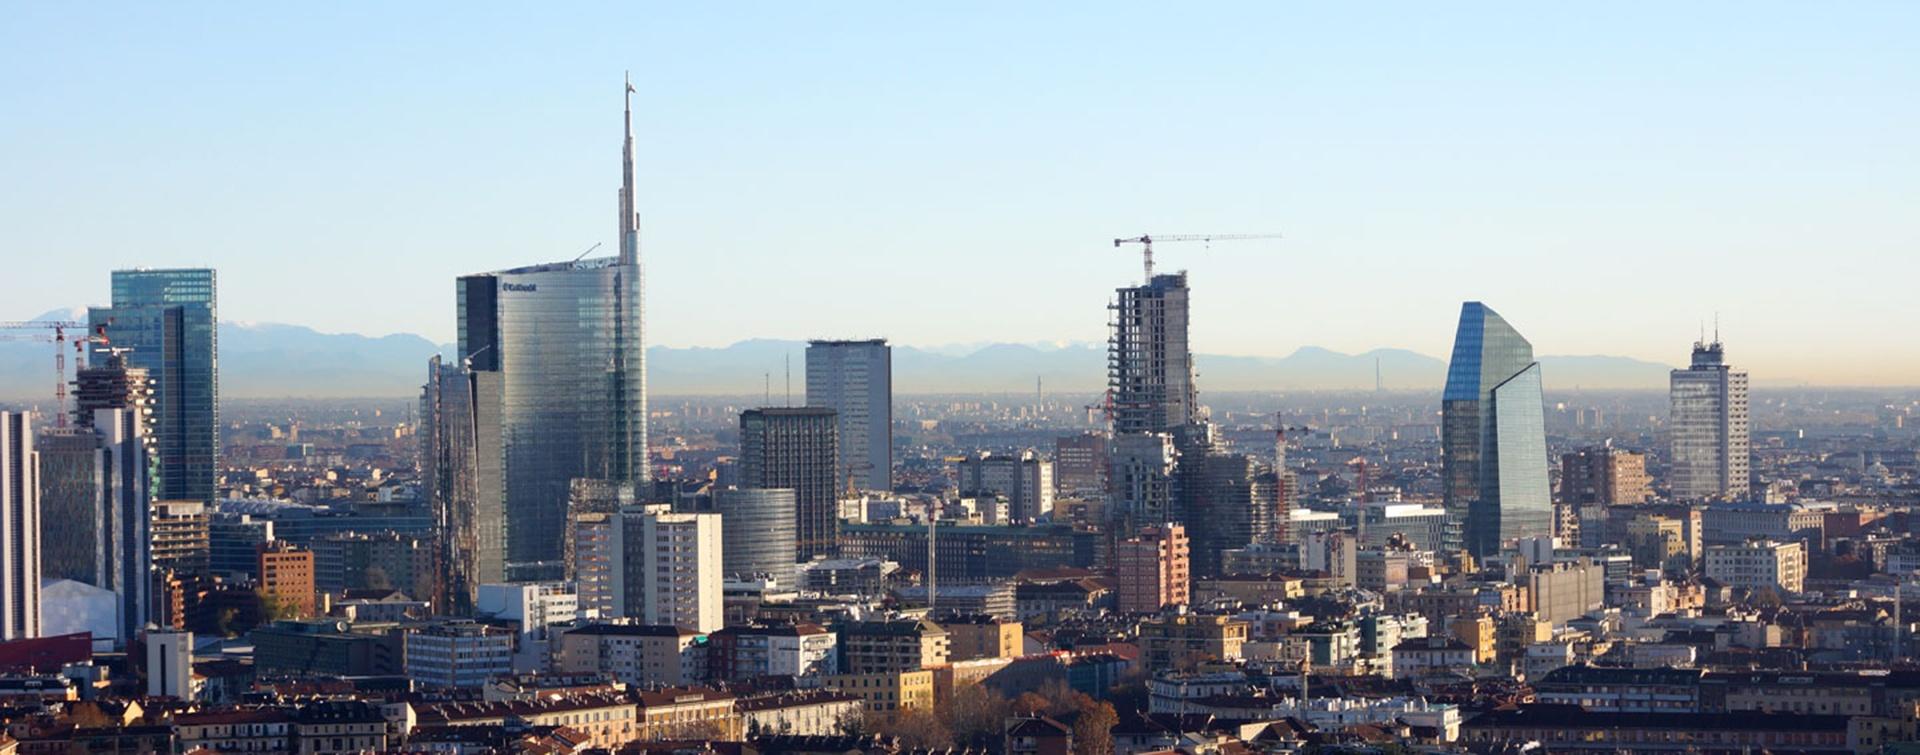 Milano Paesaggio Culturale in Realtà Aumentata